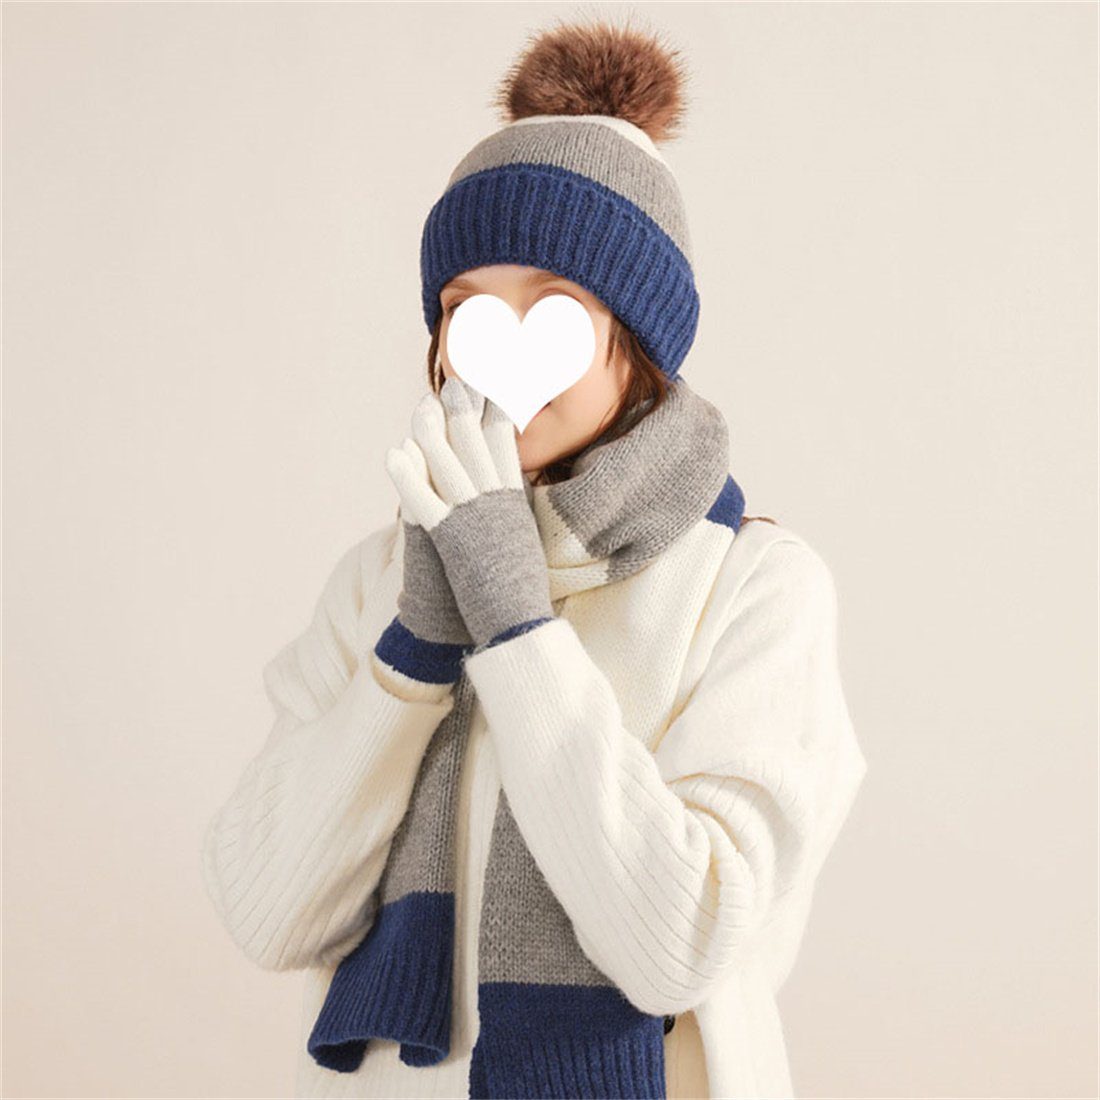 Blau 3er Mütze Strickmütze Set Warme + Handschuhe Winter Modische Schal Wollmütze, DÖRÖY Bunte Weiß